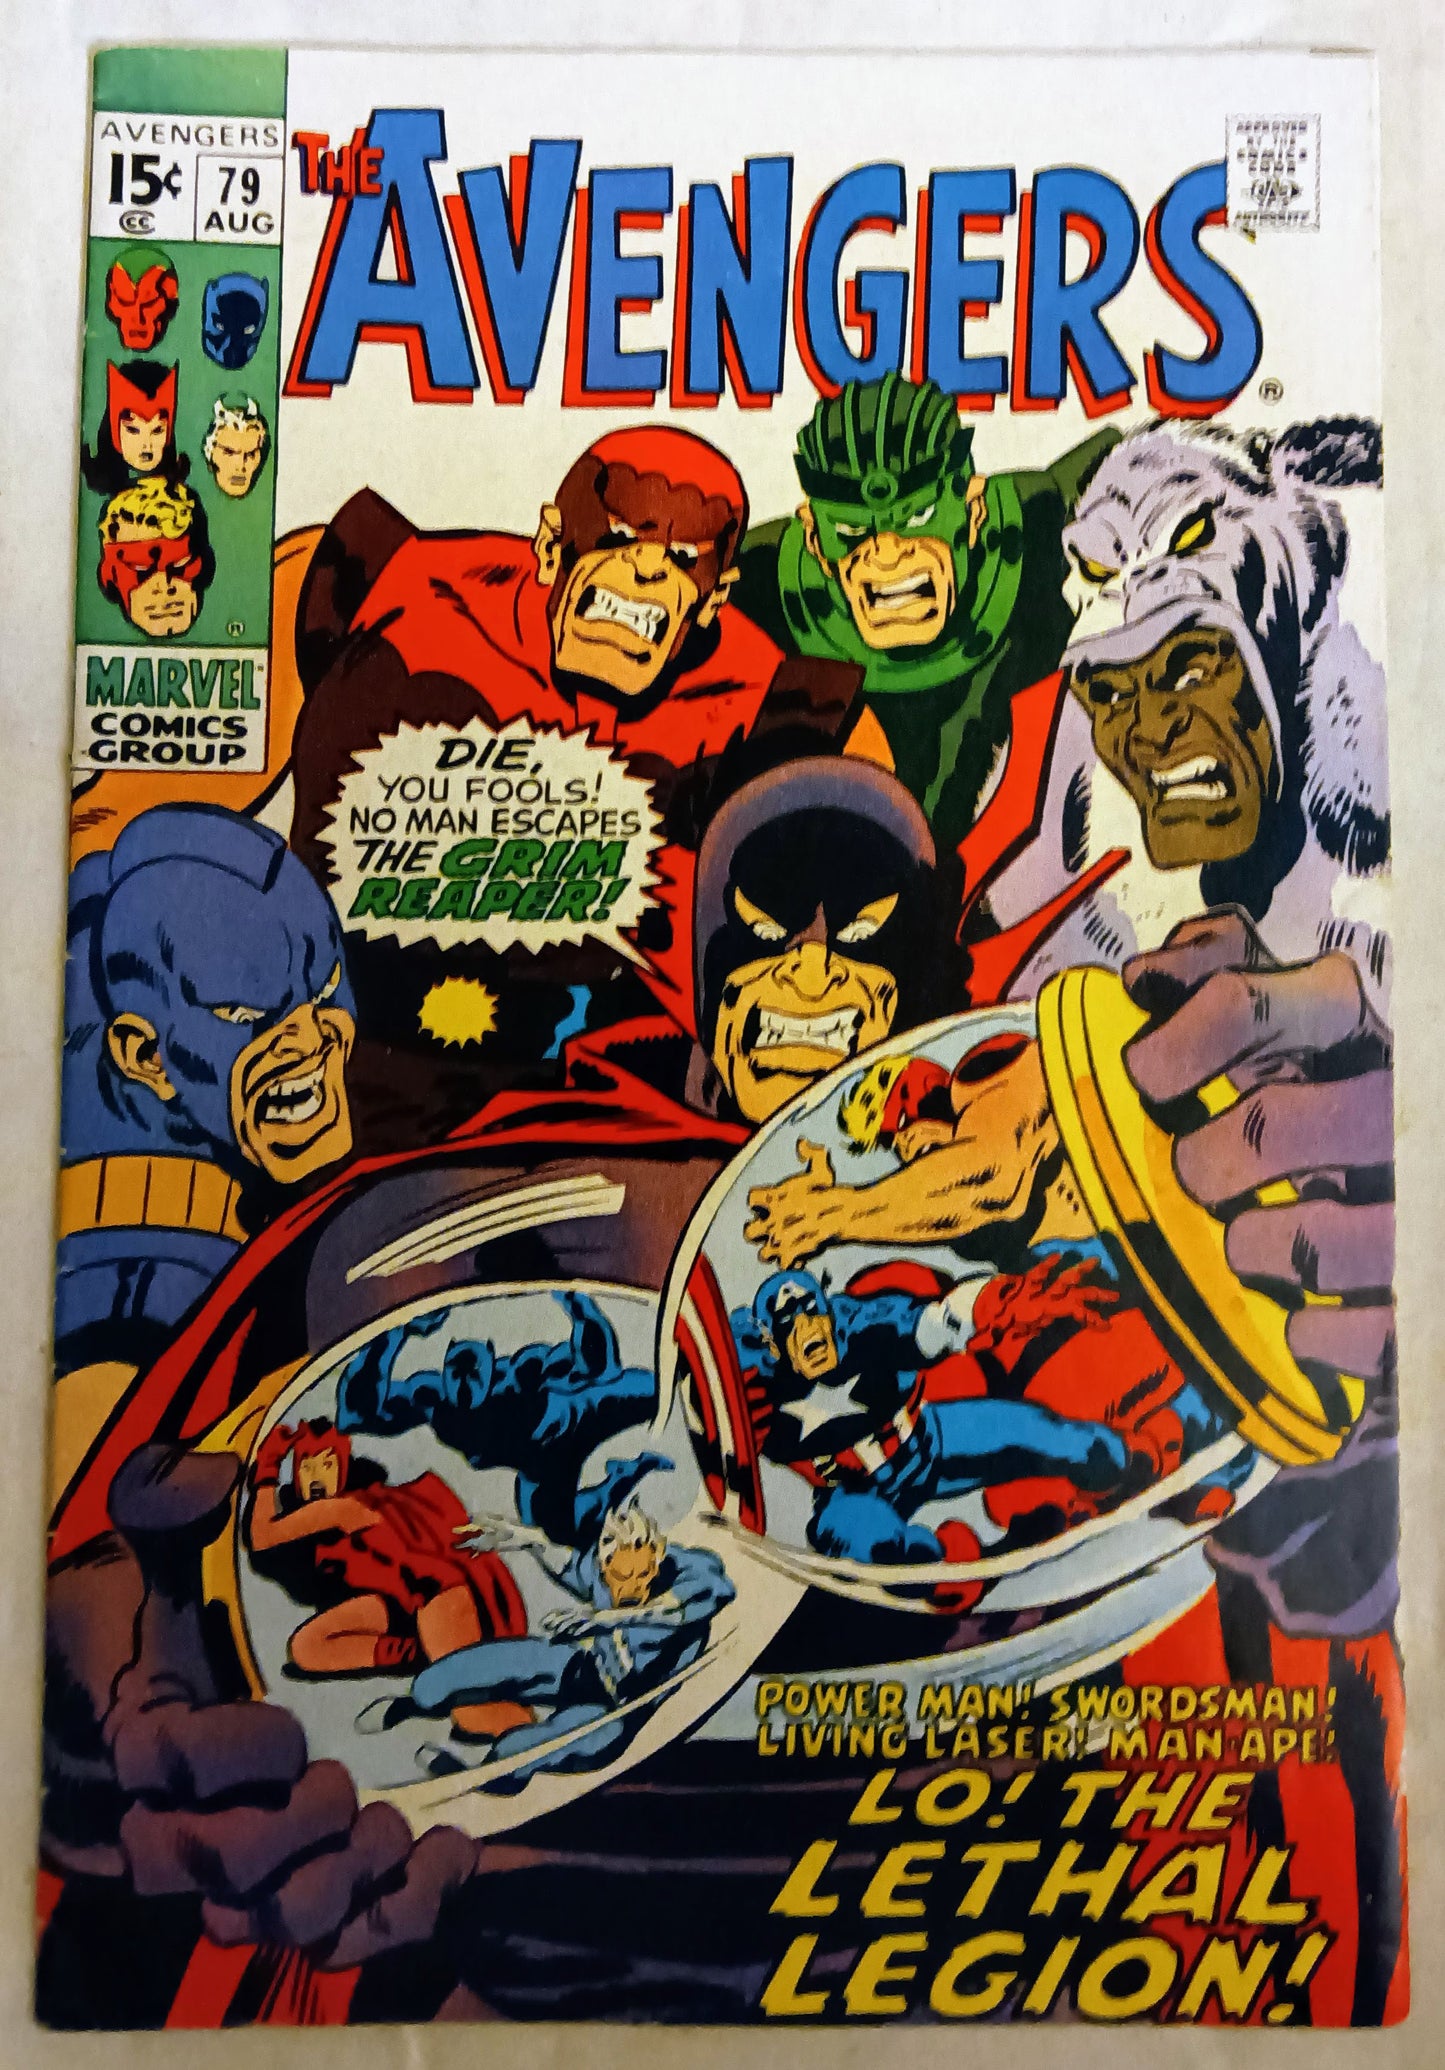 Avengers #079, Marvel Comics (August 1970)